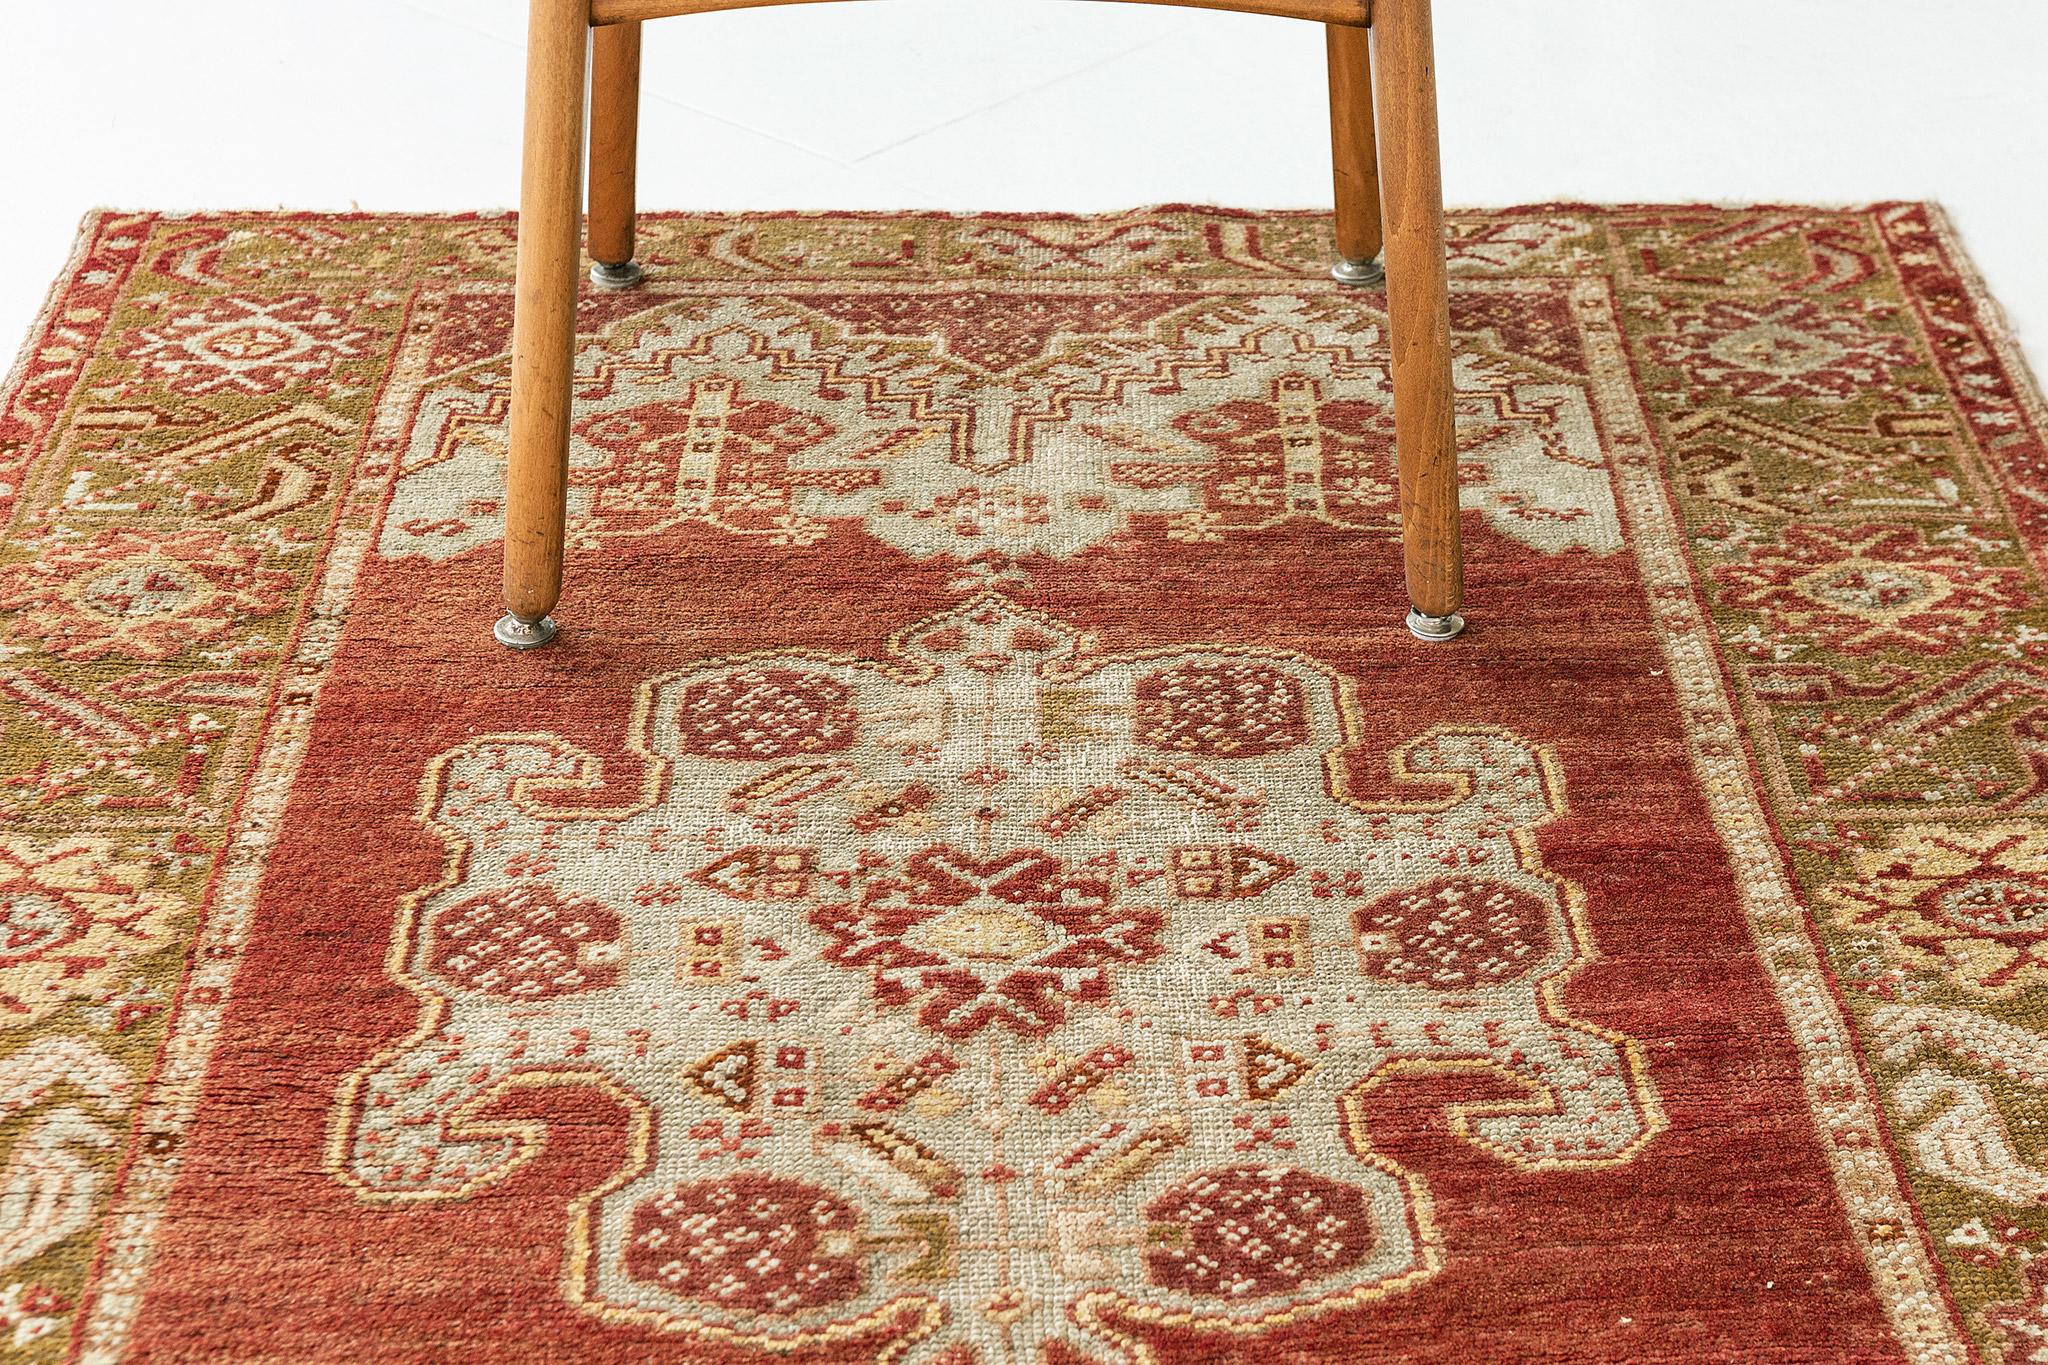 Ein phänomenaler antiker türkisch-anatolischer Teppich mit einem klassischen und zeitlosen Muster. In der Collaboration von warmen und lebendigen Terrakotta-, Moosgrün- und Ecru-Tönen ist dieser edle Teppich mit bezaubernden, anmutigen